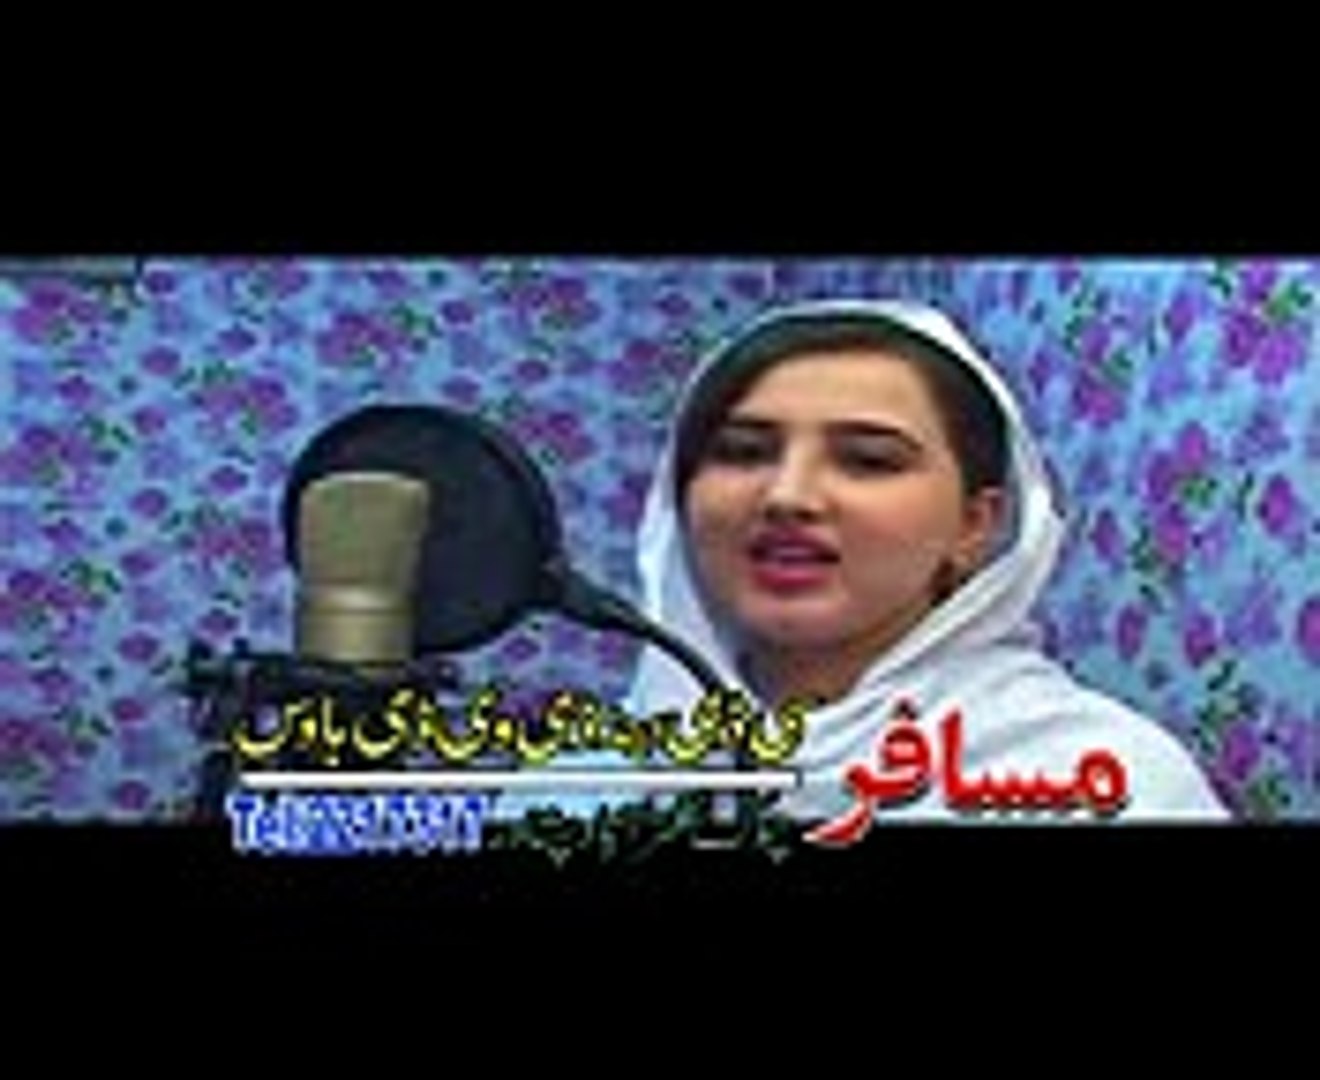 Pashto Singar Nazia Iqbal Xxx Com - Nazia Iqbal by xxx videos sexy videos hot videos xnxx porn - Dailymotion